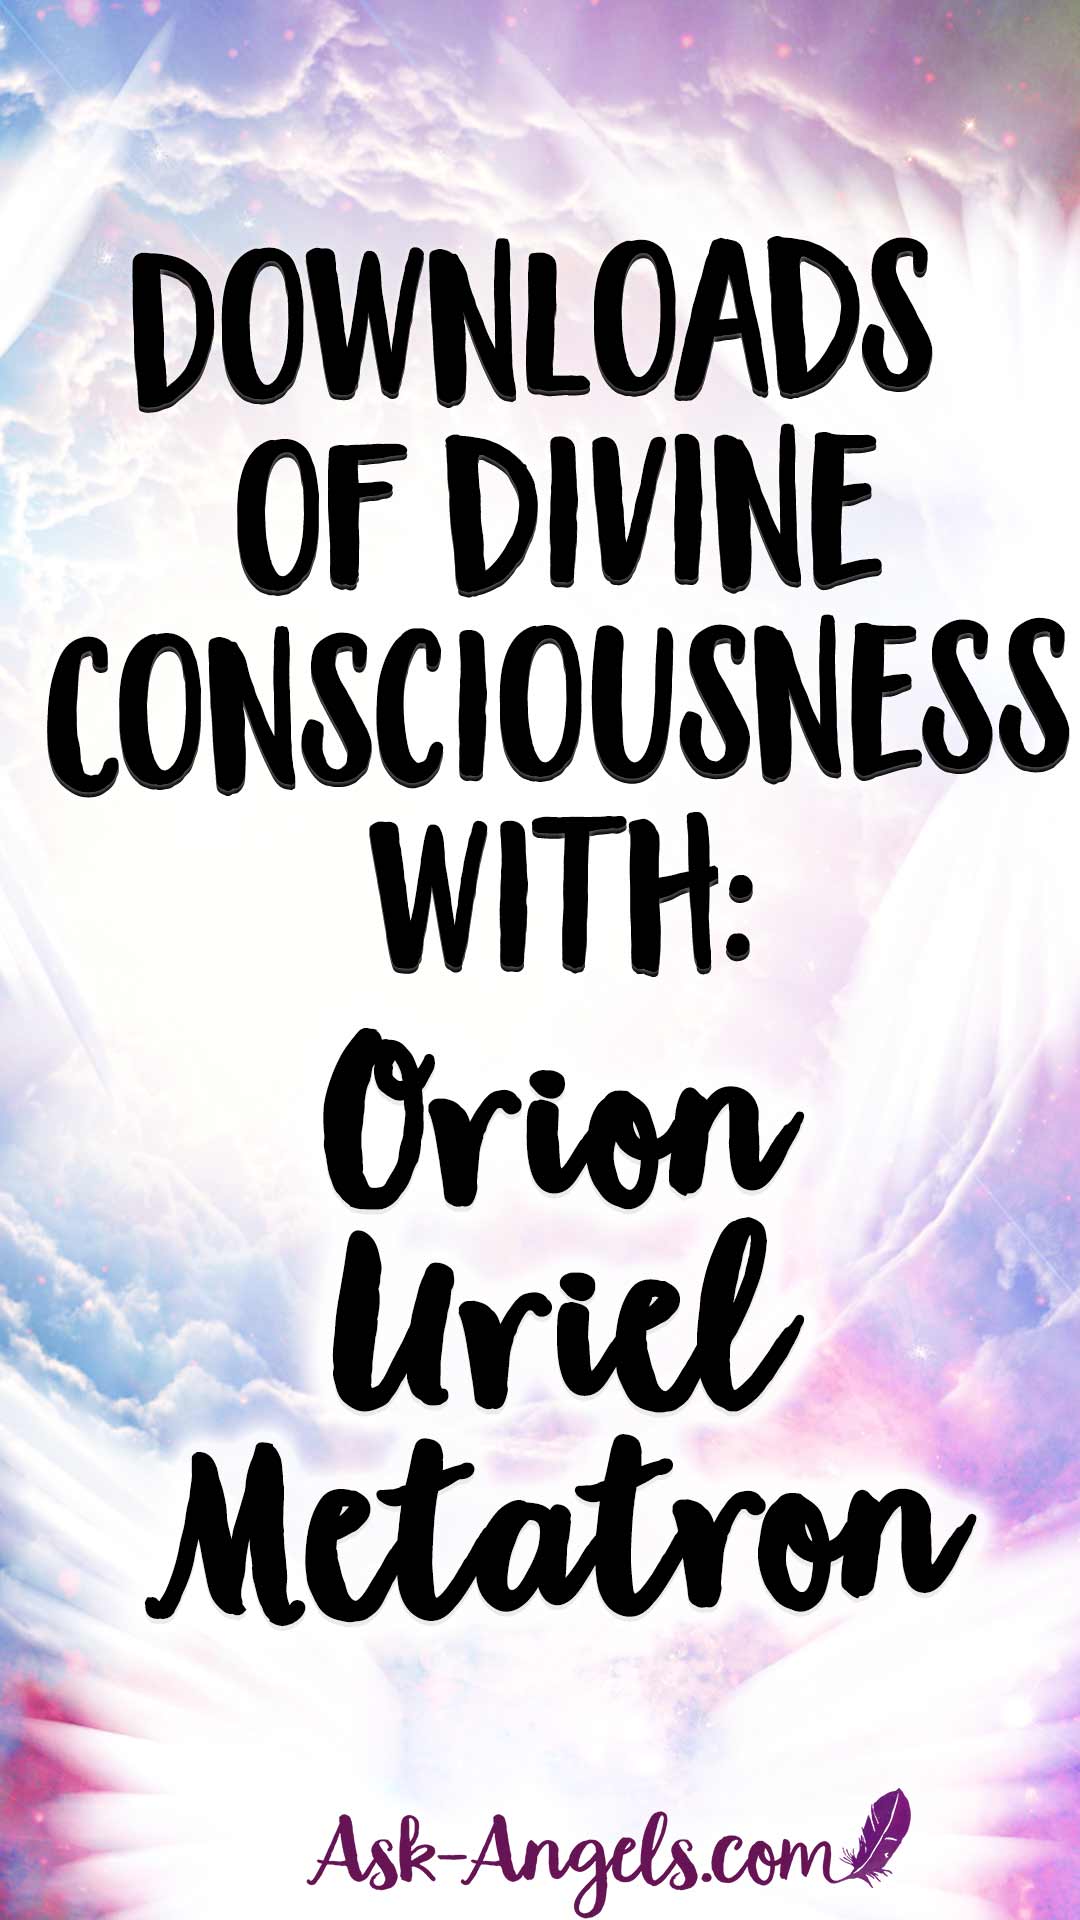 Downloads of Divine Consciousness